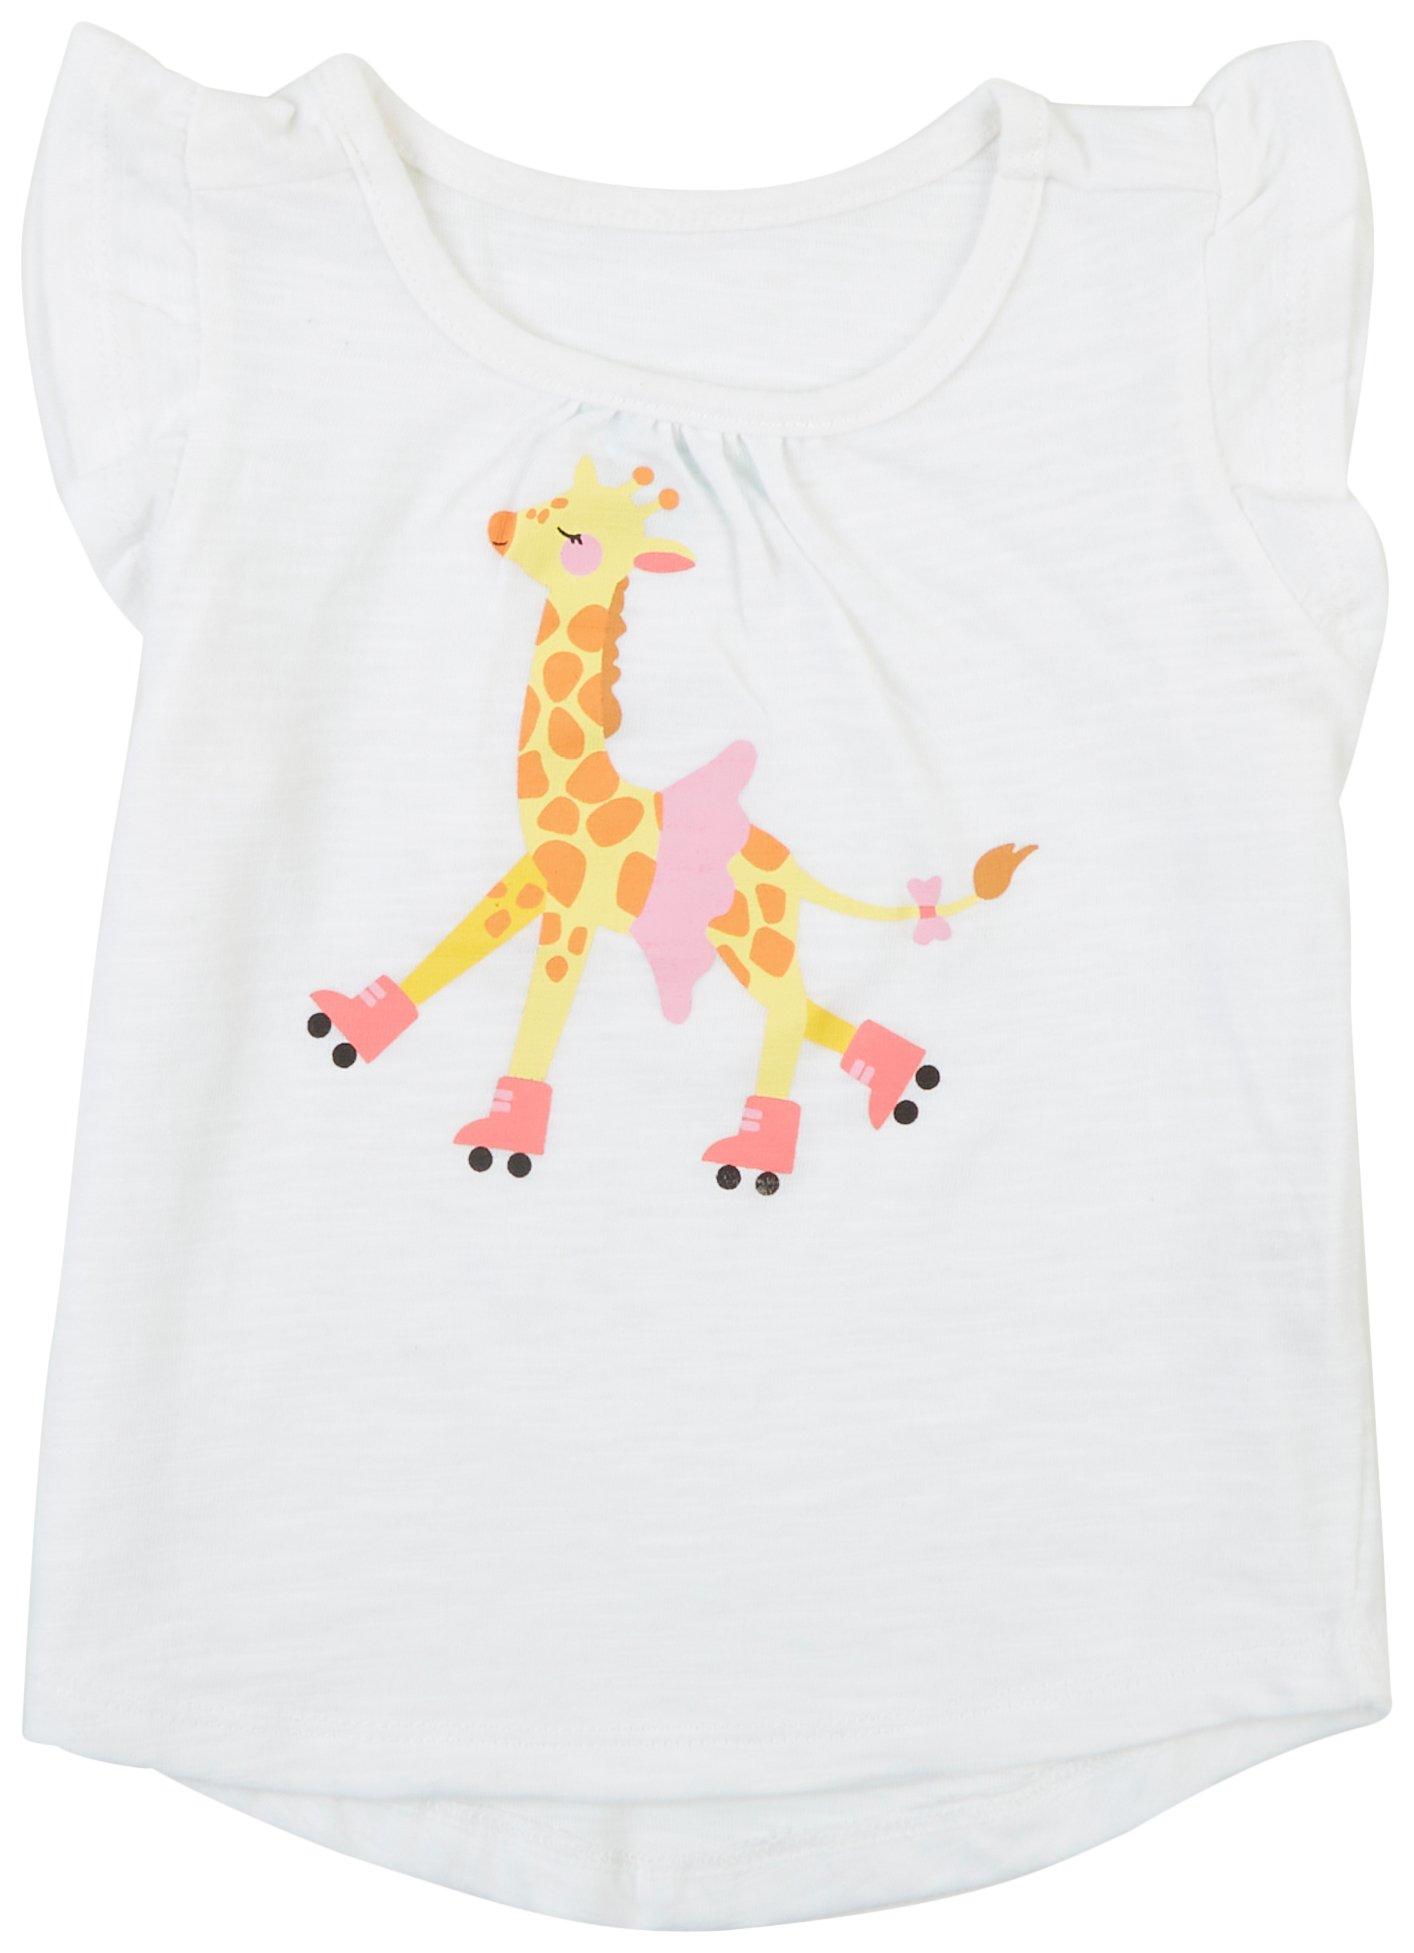 Baby Girls Girafe Flutter Short Sleeve Tee